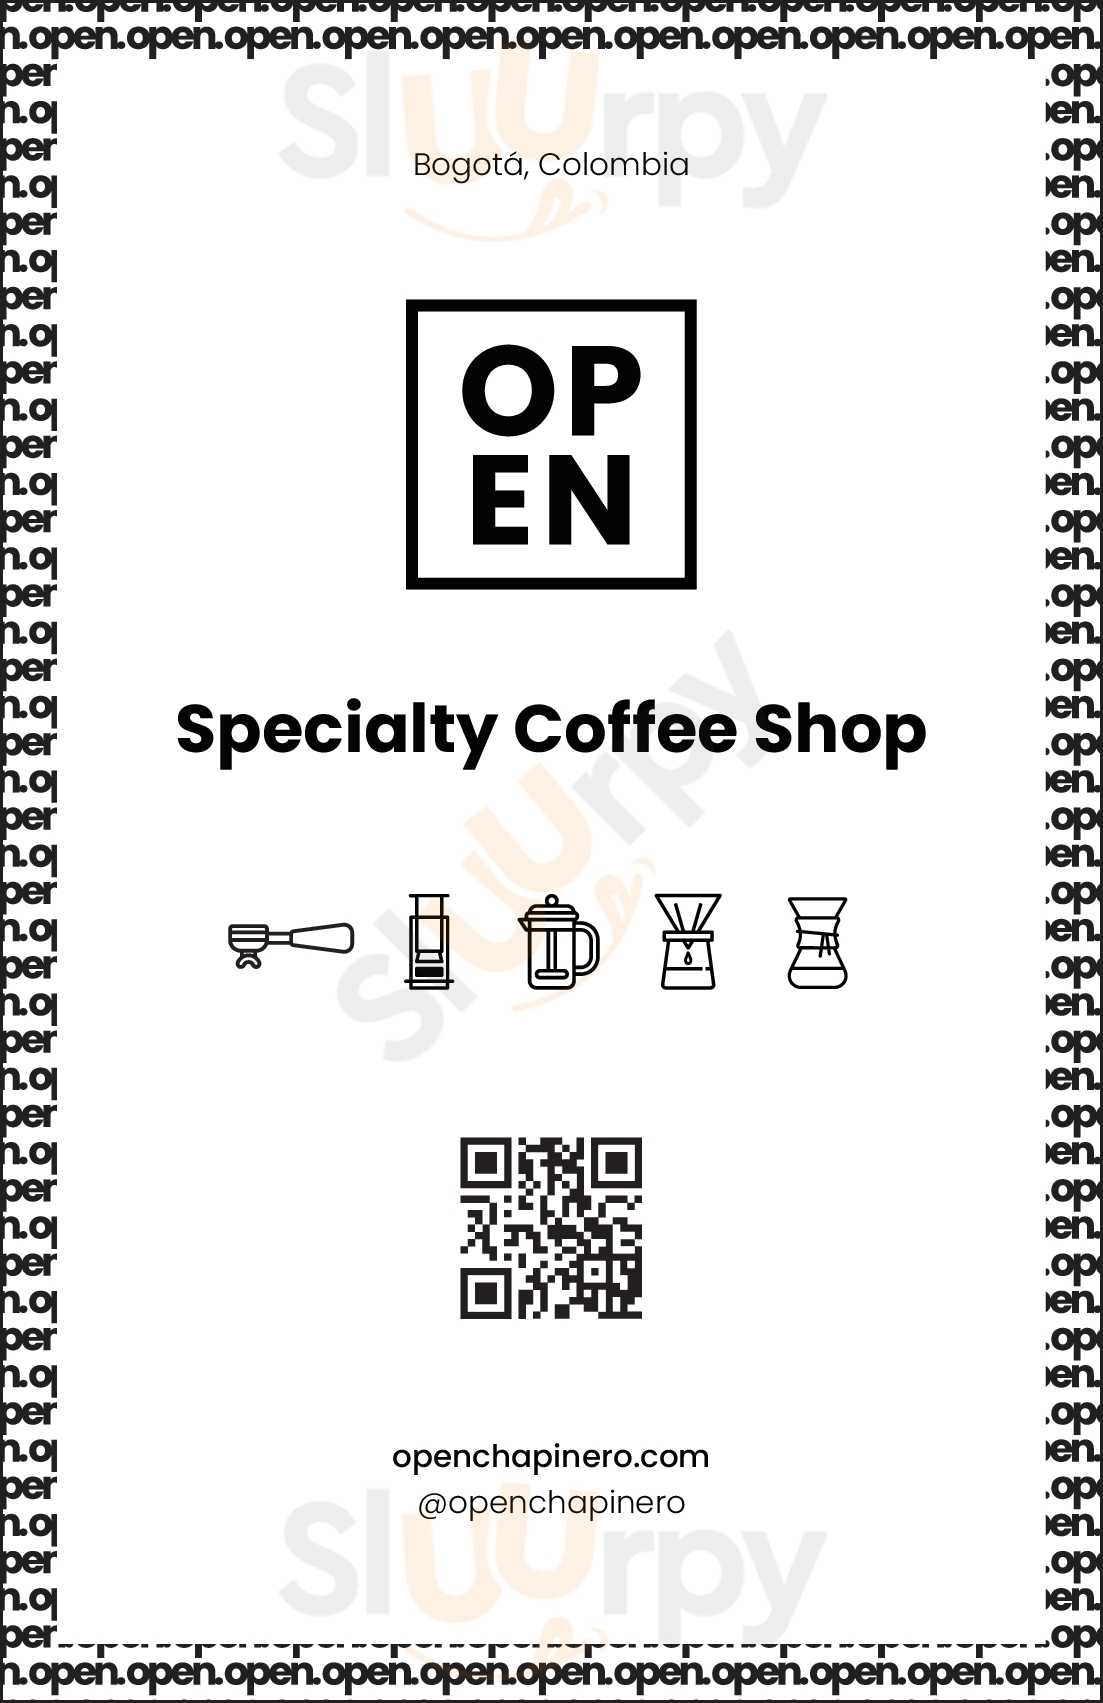 Open Chapinero Specialty Coffee Shop Bogotá Menu - 1